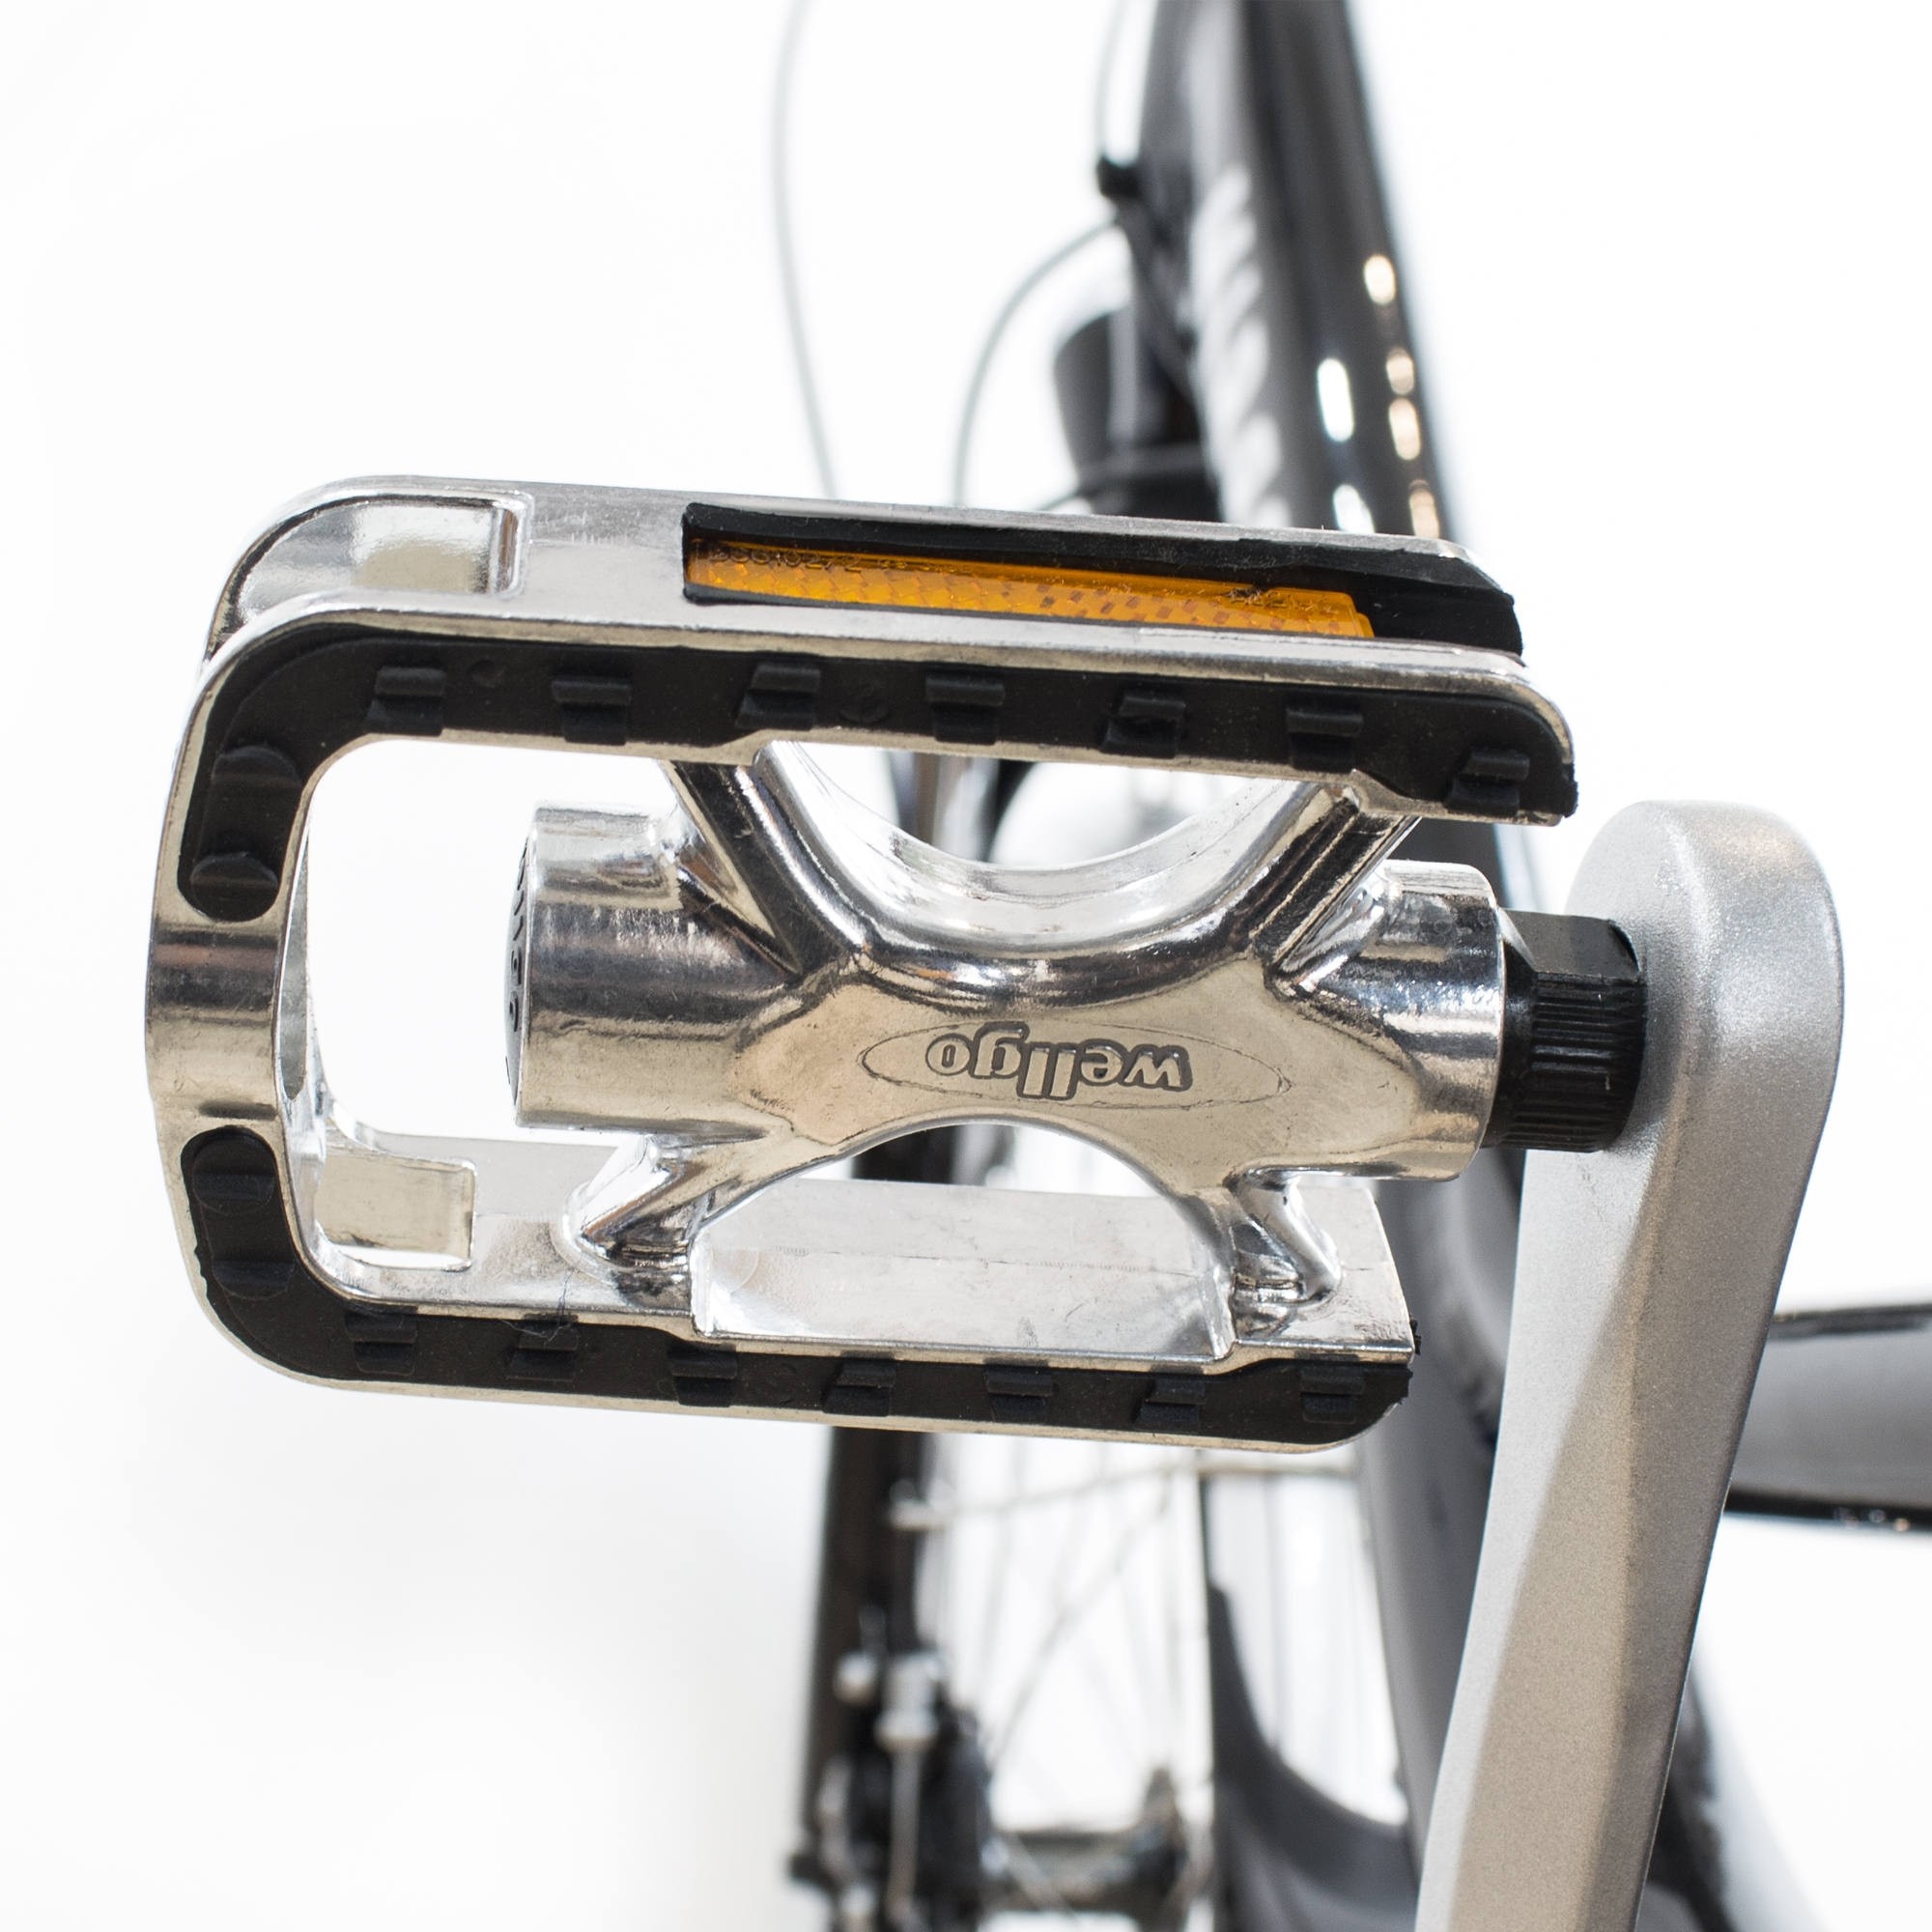 Wellgo Pedals For Mirrorstone E-Bike